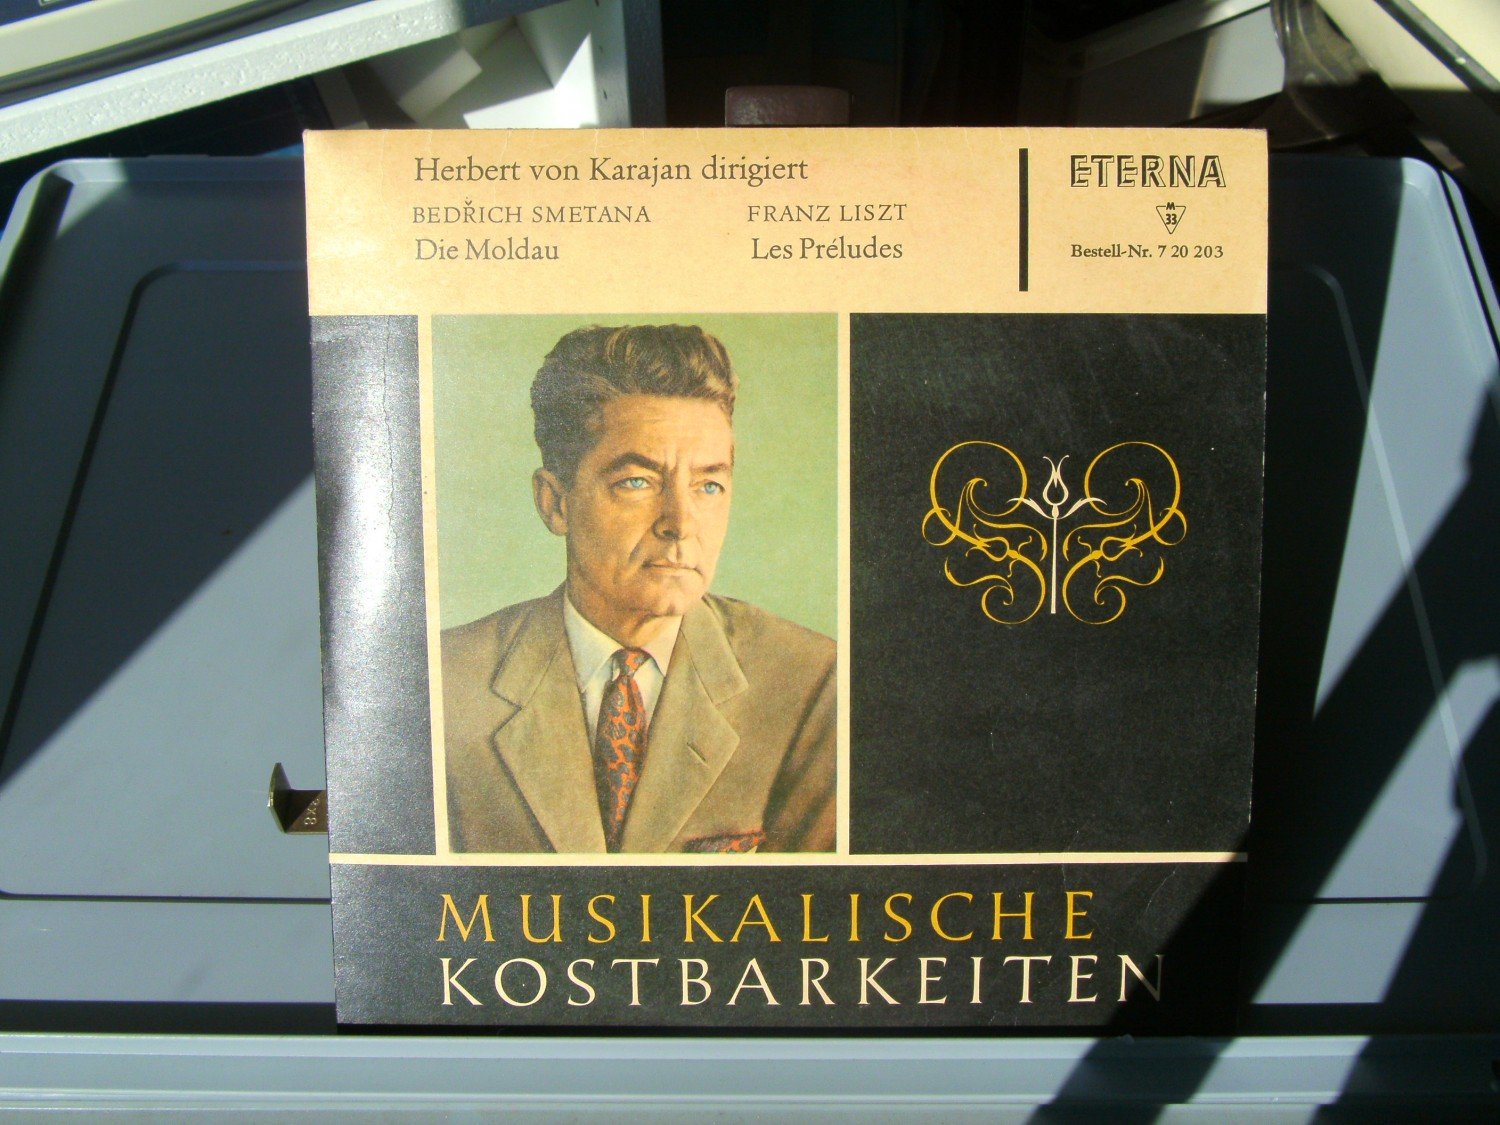 (Herbert MUSIKALISCHE kaufen Karajan) – A02fmSCJ21ZZ7 – Tonträger KOSTBARKEITEN“ gebraucht von